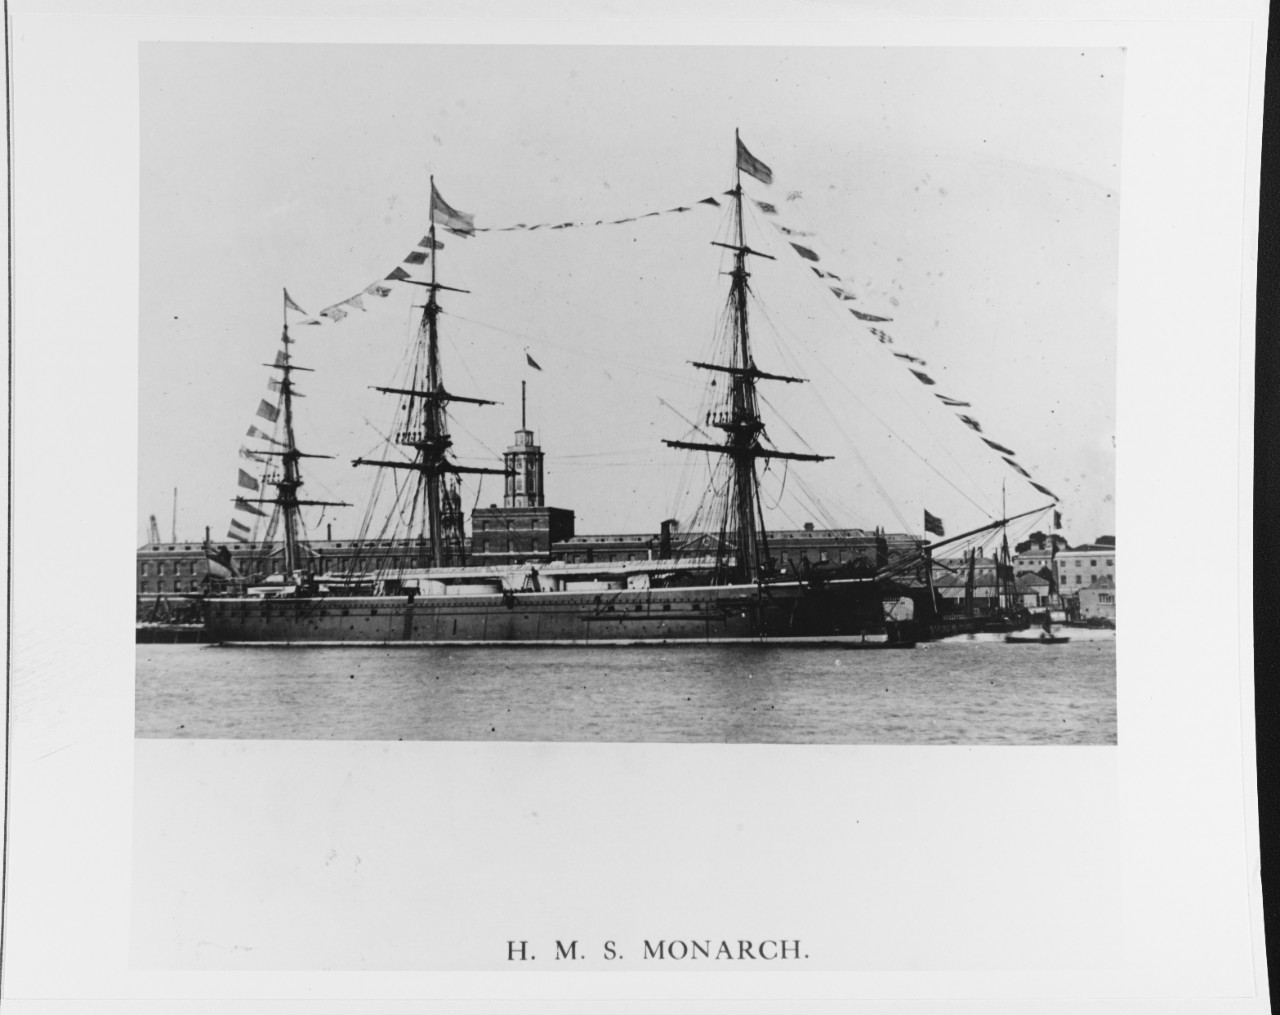 HMS MONARCH (BRITISH BATTLESHIP, 1868)